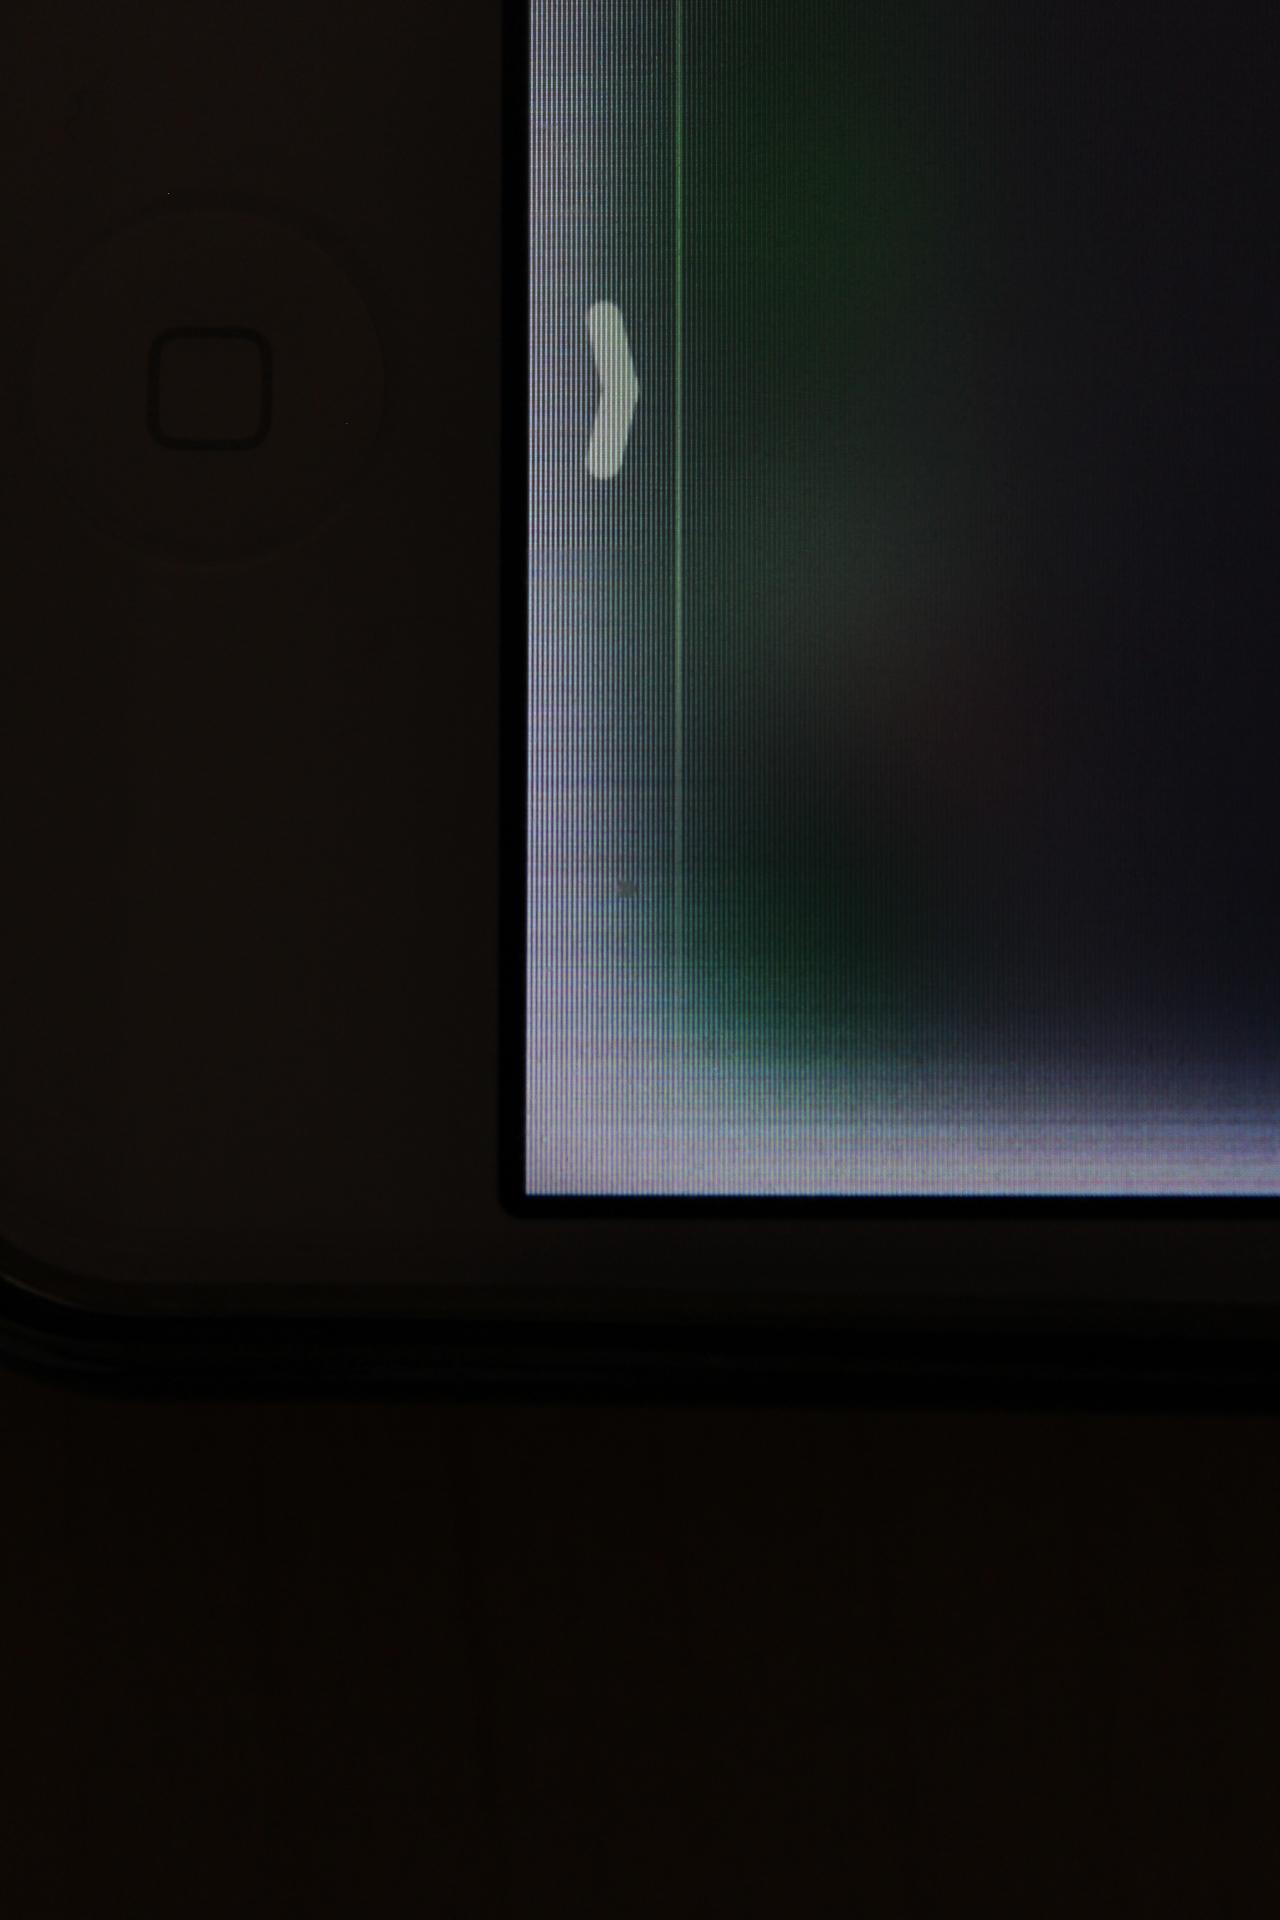  Çıldıracağım, ekran kenarında beyazlıklar?! - iPhone 4s